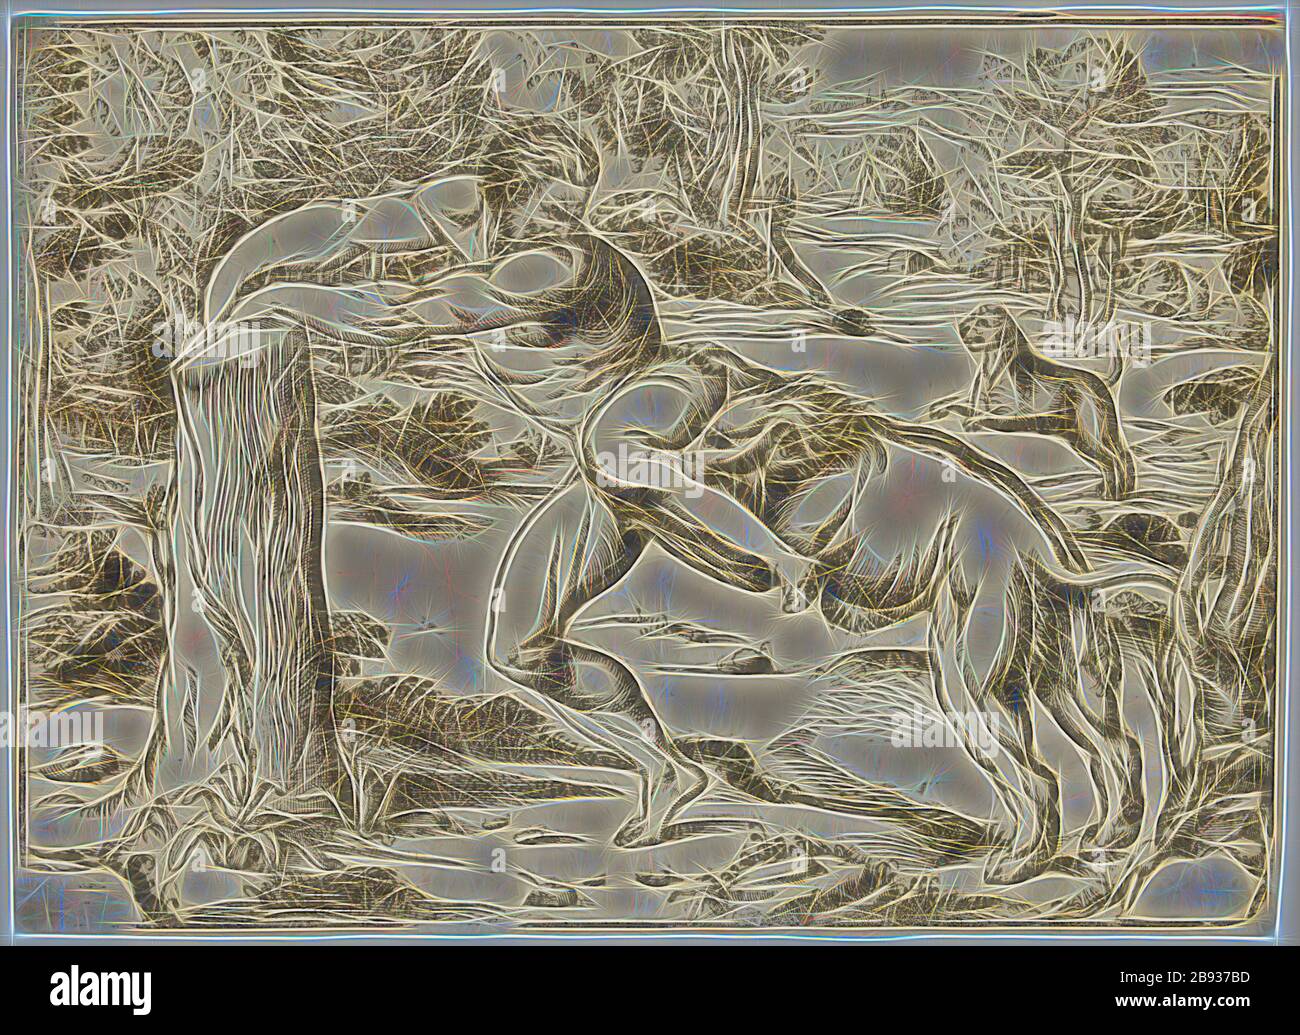 Niccolò Boldrini, Italien, 1510-1566, Milo attaqué par les Lions, entre 1510 et 1566, coupe de bois imprimé à l'encre noire sur papier ponté, image: 11 7/8 × 16 1/4 pouces (30.2 × 41.3 cm), repensé par Gibon, design de glanissement chaleureux et de rayons de lumière radiance. L'art classique réinventé avec une touche moderne. La photographie inspirée du futurisme, qui embrasse l'énergie dynamique de la technologie moderne, du mouvement, de la vitesse et révolutionne la culture. Banque D'Images